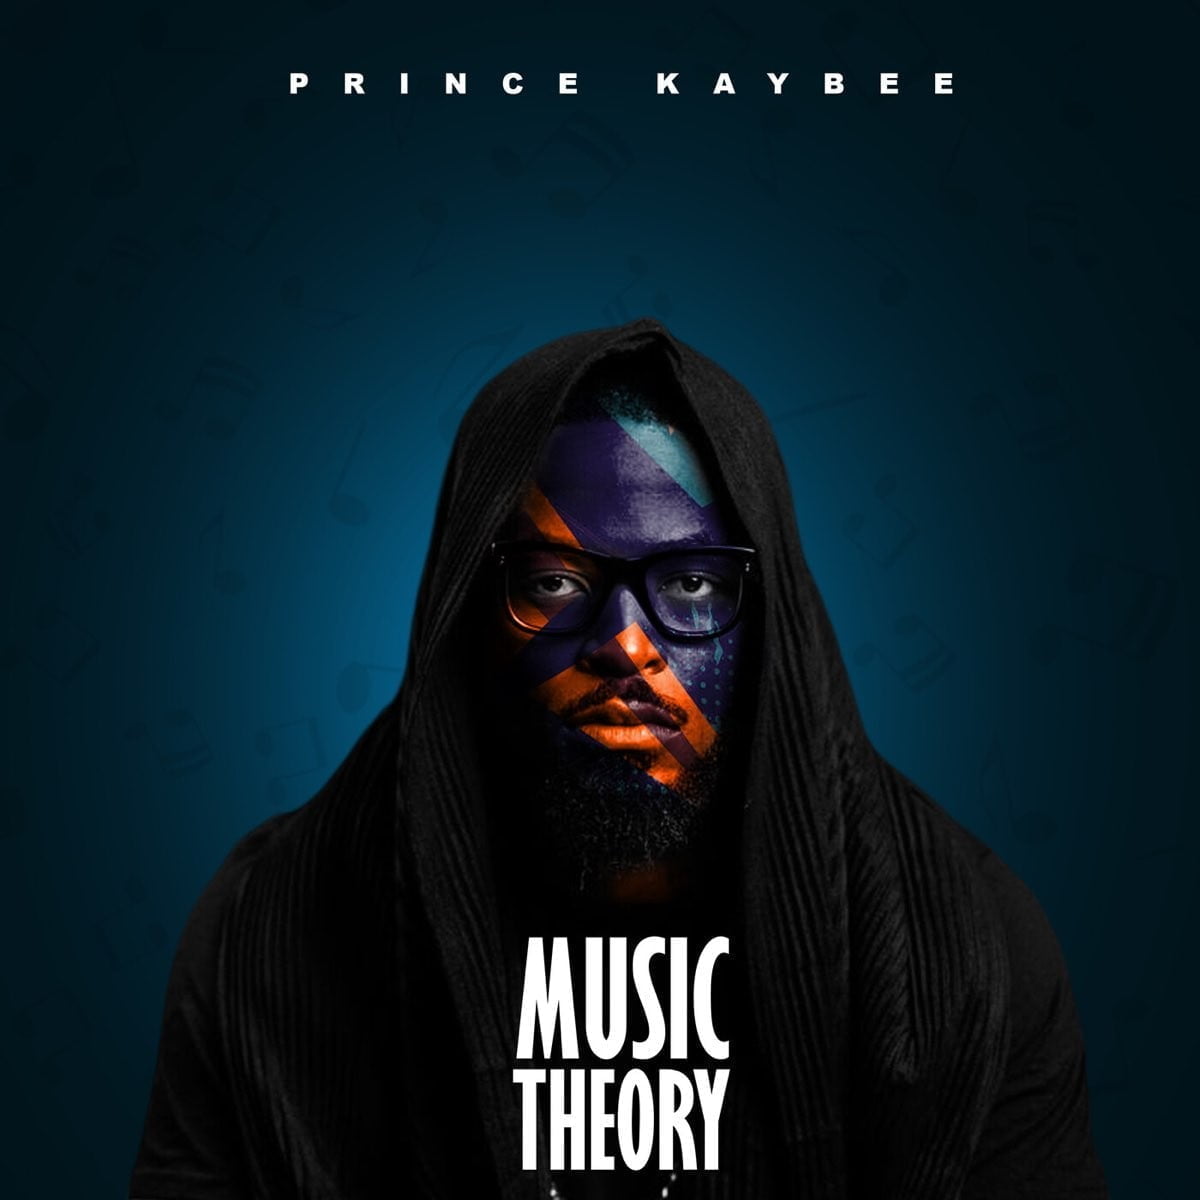 Prince Kaybee – Mpendulo ft. Bongeziwe Mabandla mp3 download free lyrics